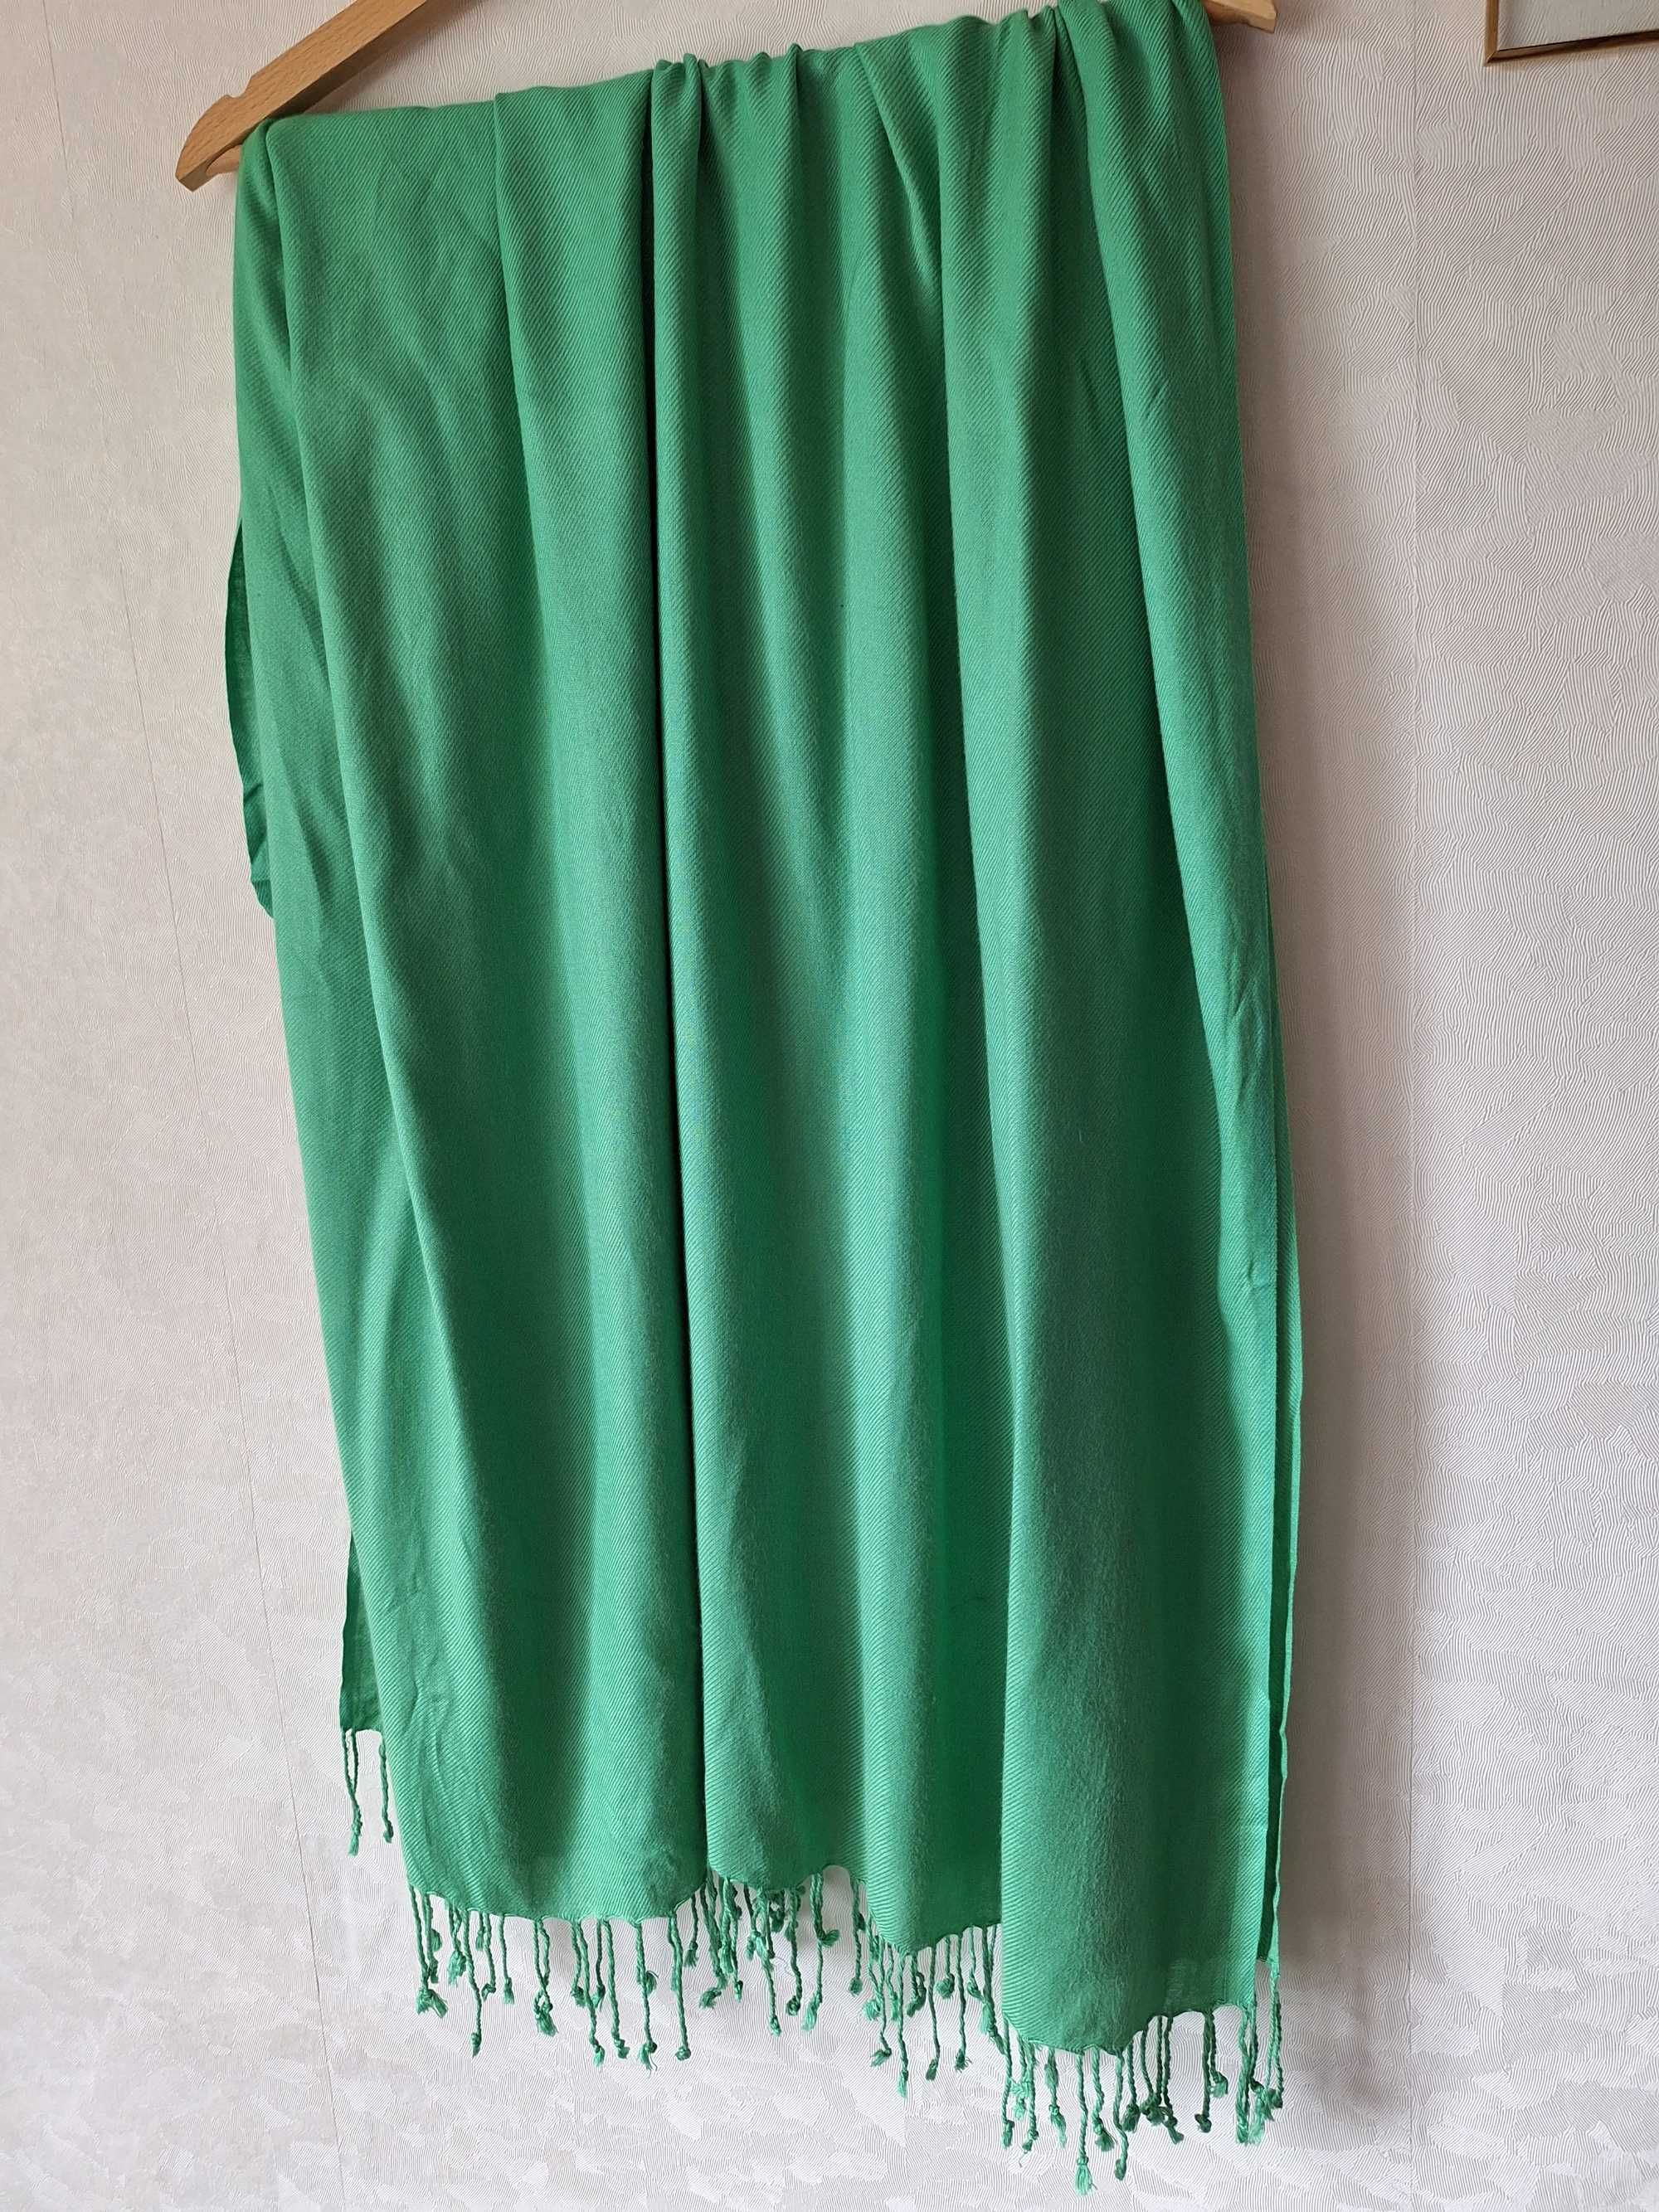 Duża zielona chusta z wiskozy szeroka jednokolorowa gładka z frędzlami